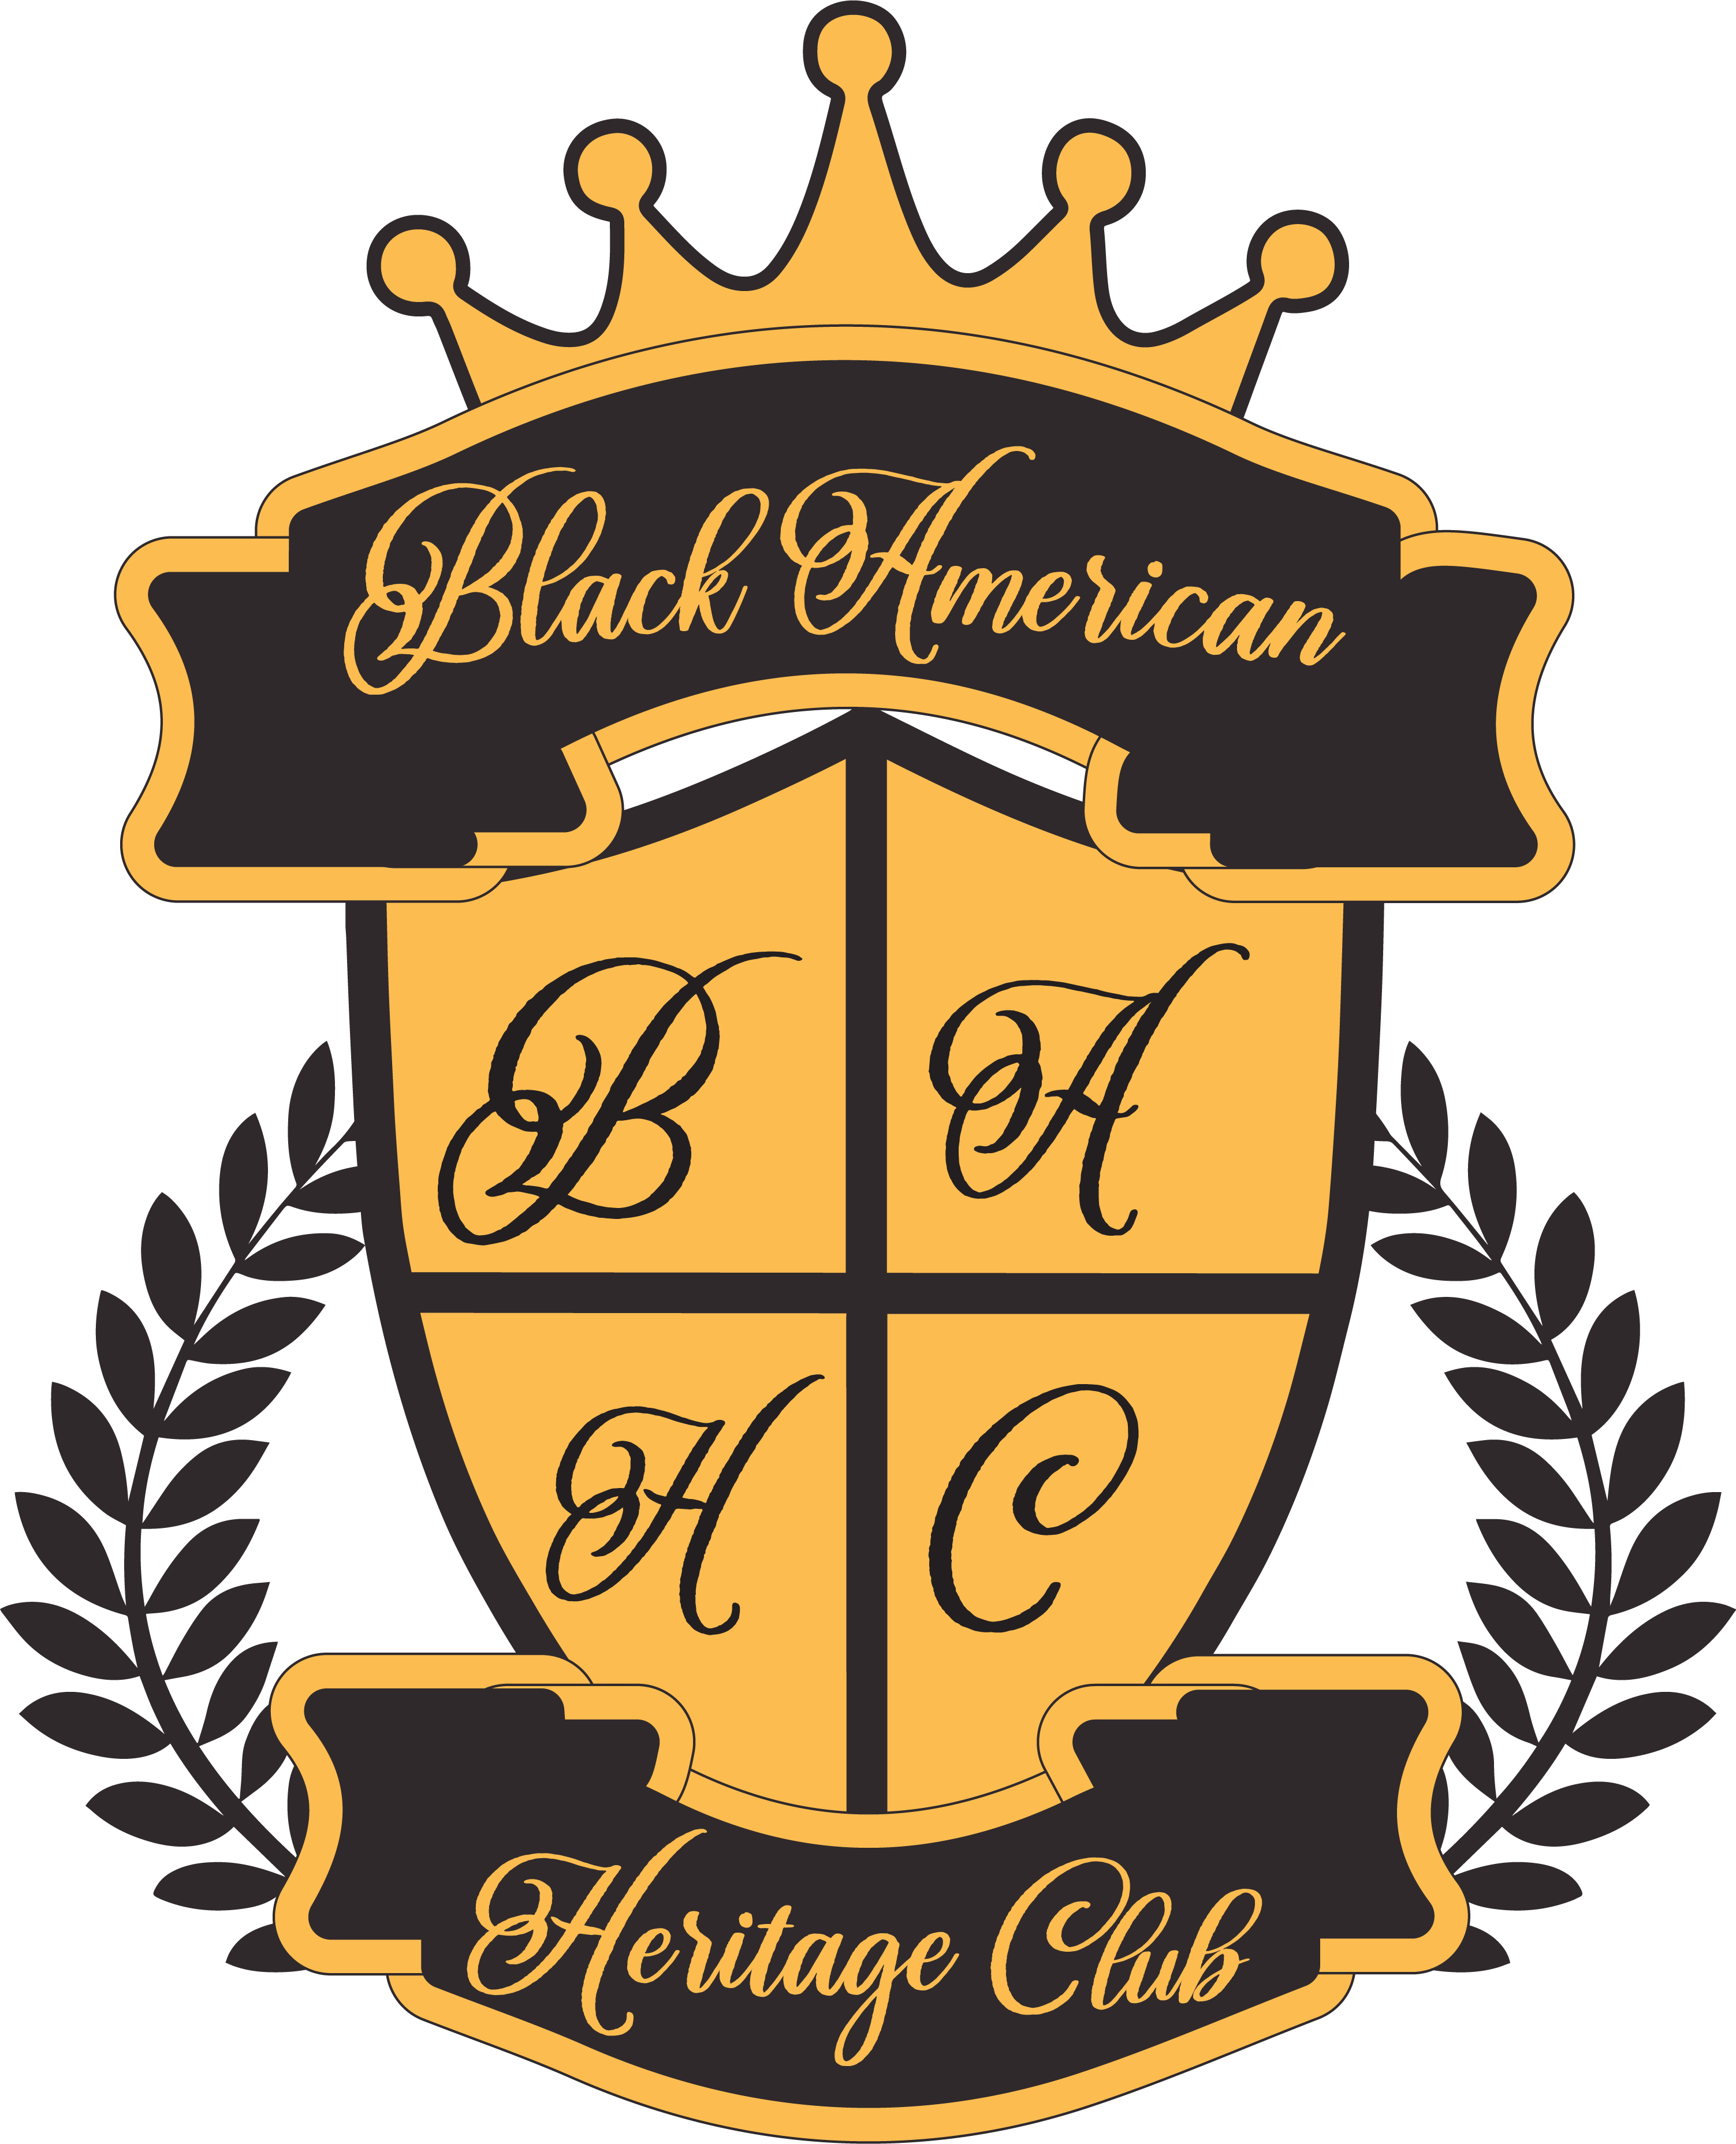 Black American Heritage Club